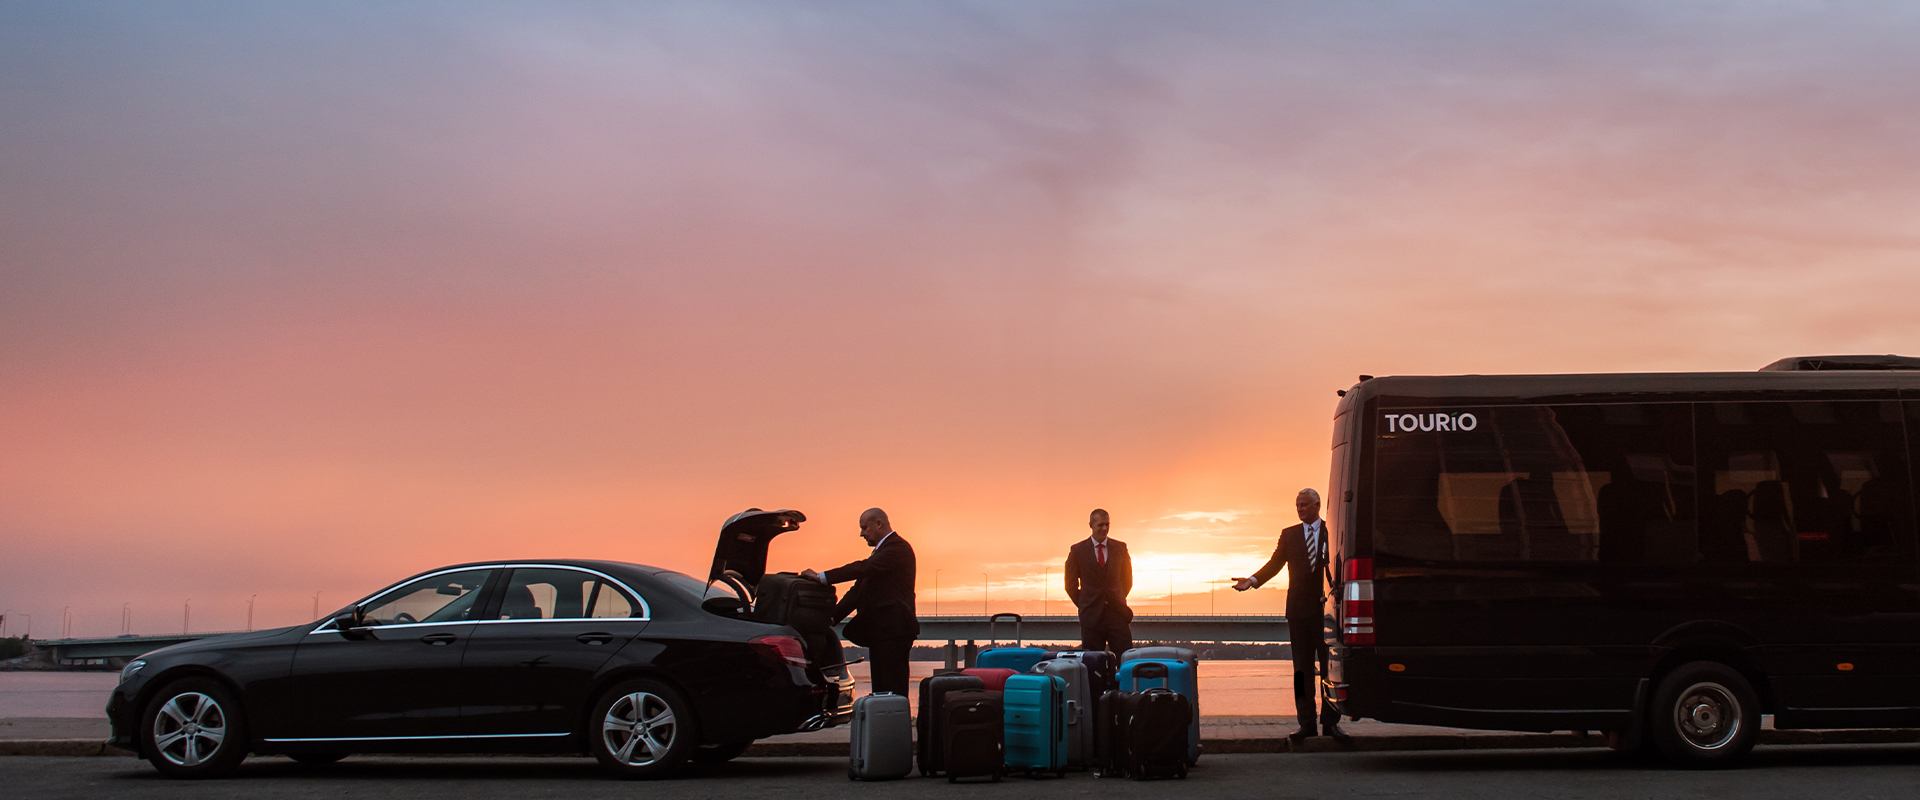 Autot, matkustajat ja matkalaukut auringonlaskussa.